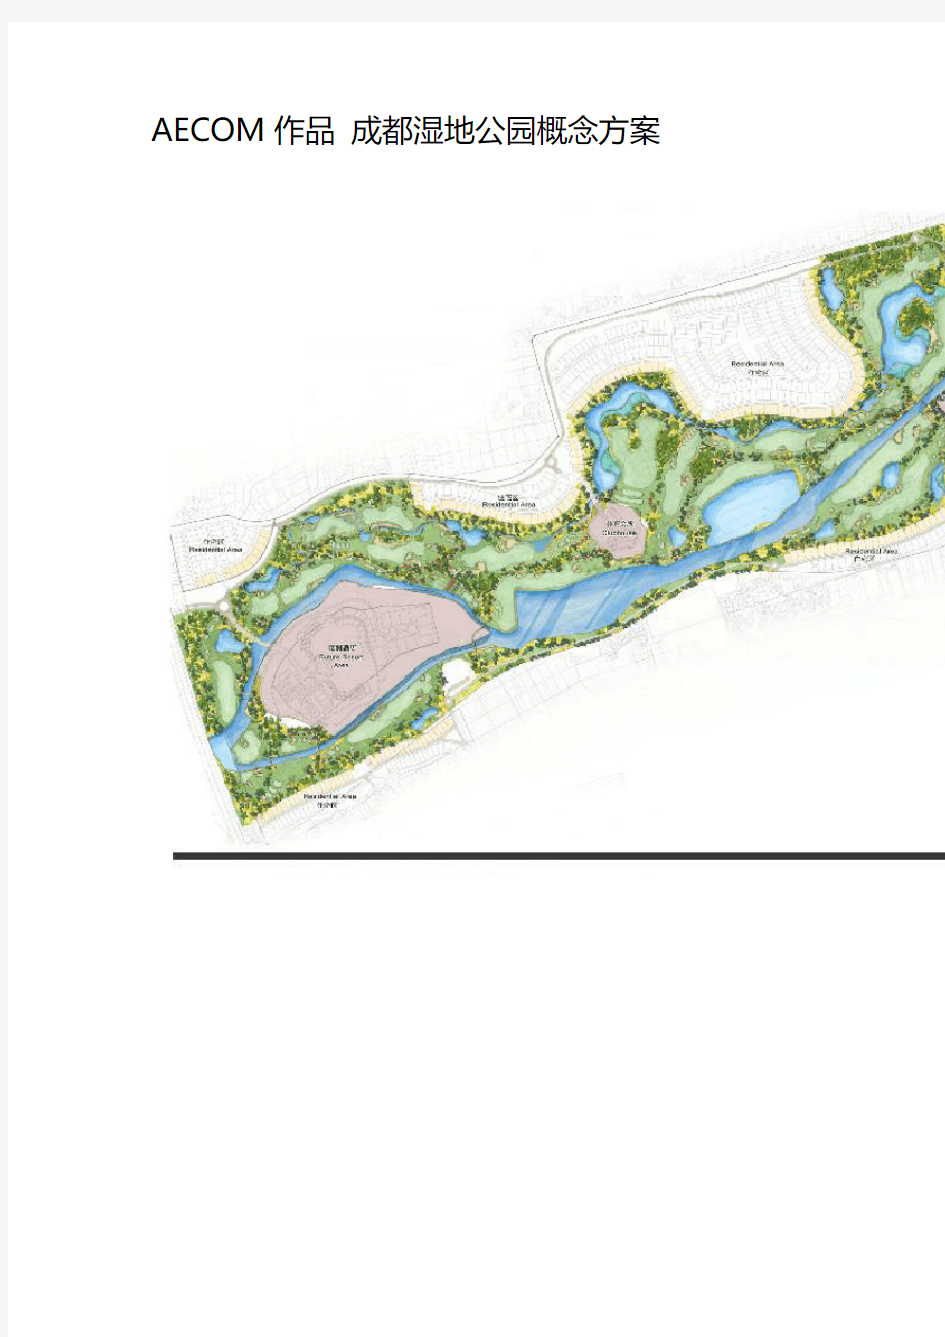 AECOM作品 成都湿地公园概念方案